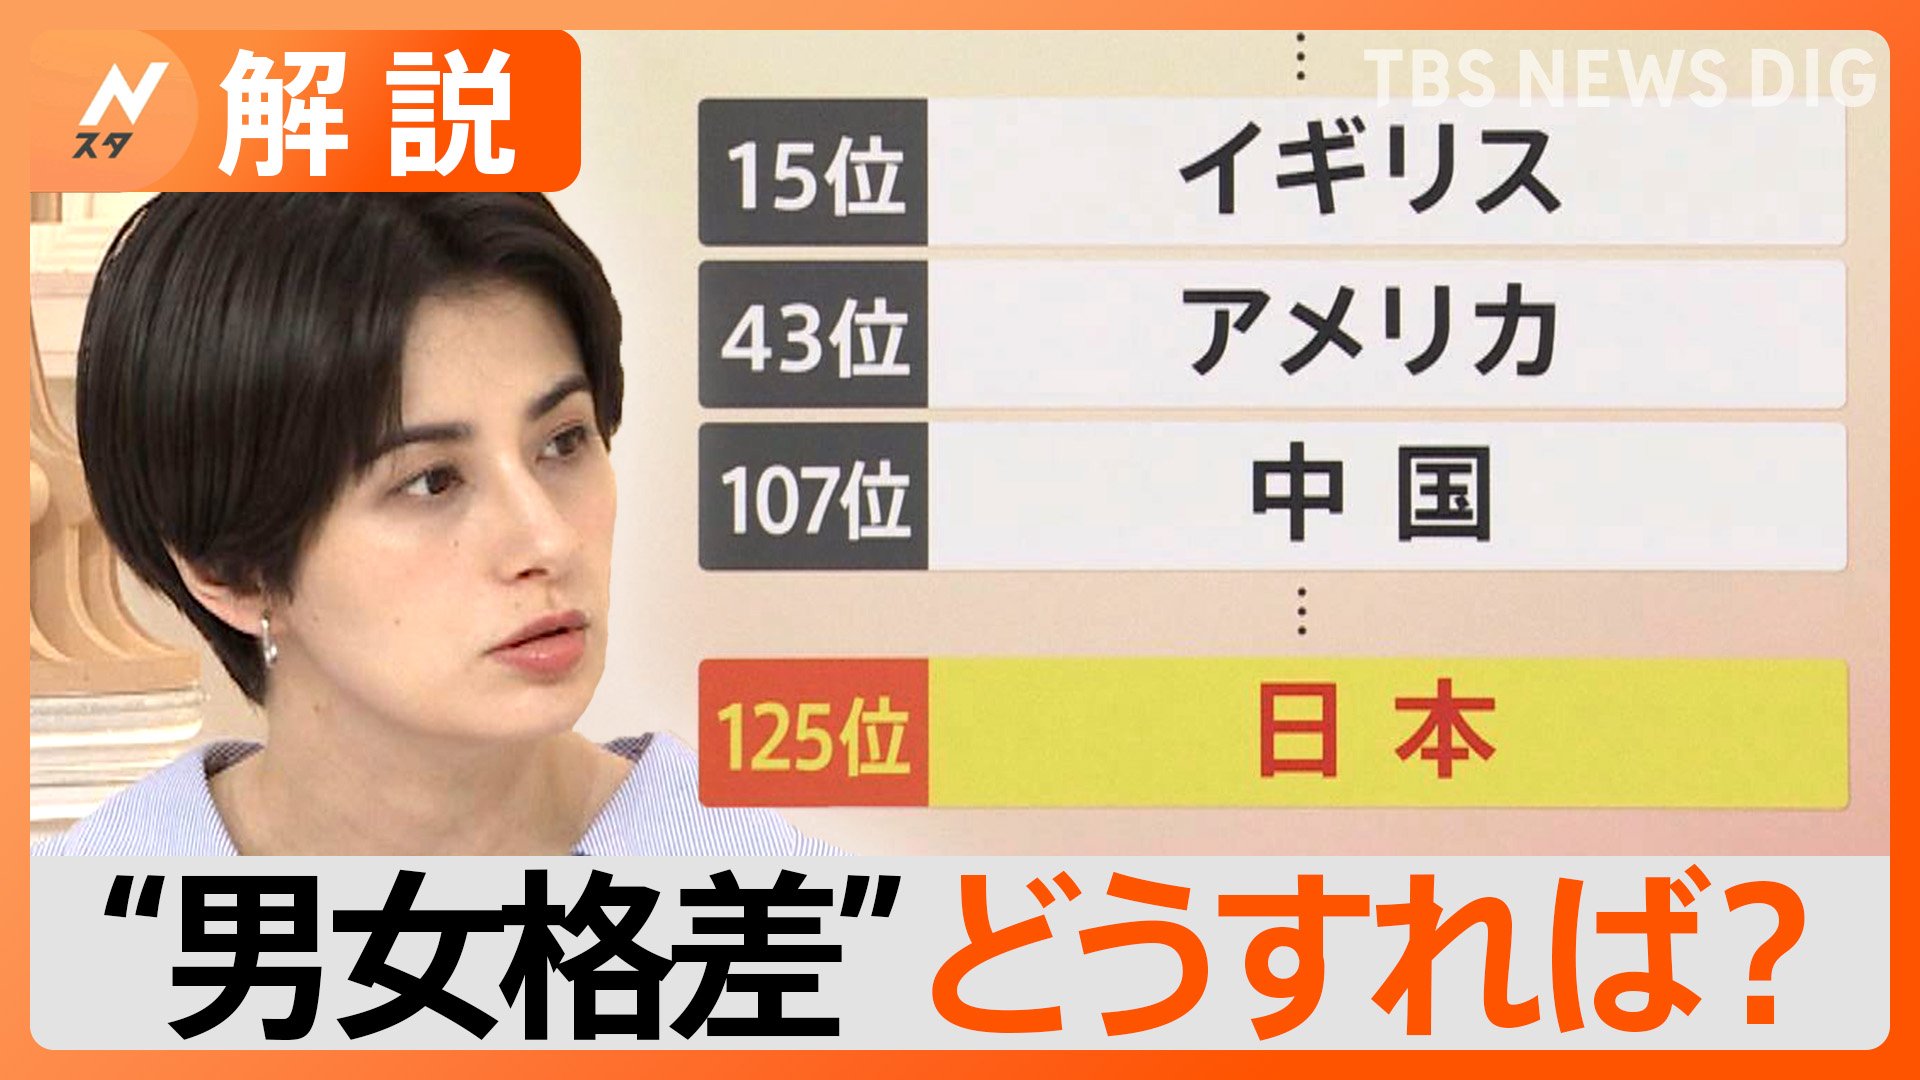 “男女格差”ジェンダーギャップ指数 日本は125位に 2006年の調査開始以来過去最低【Nスタ解説】 | TBS NEWS DIG